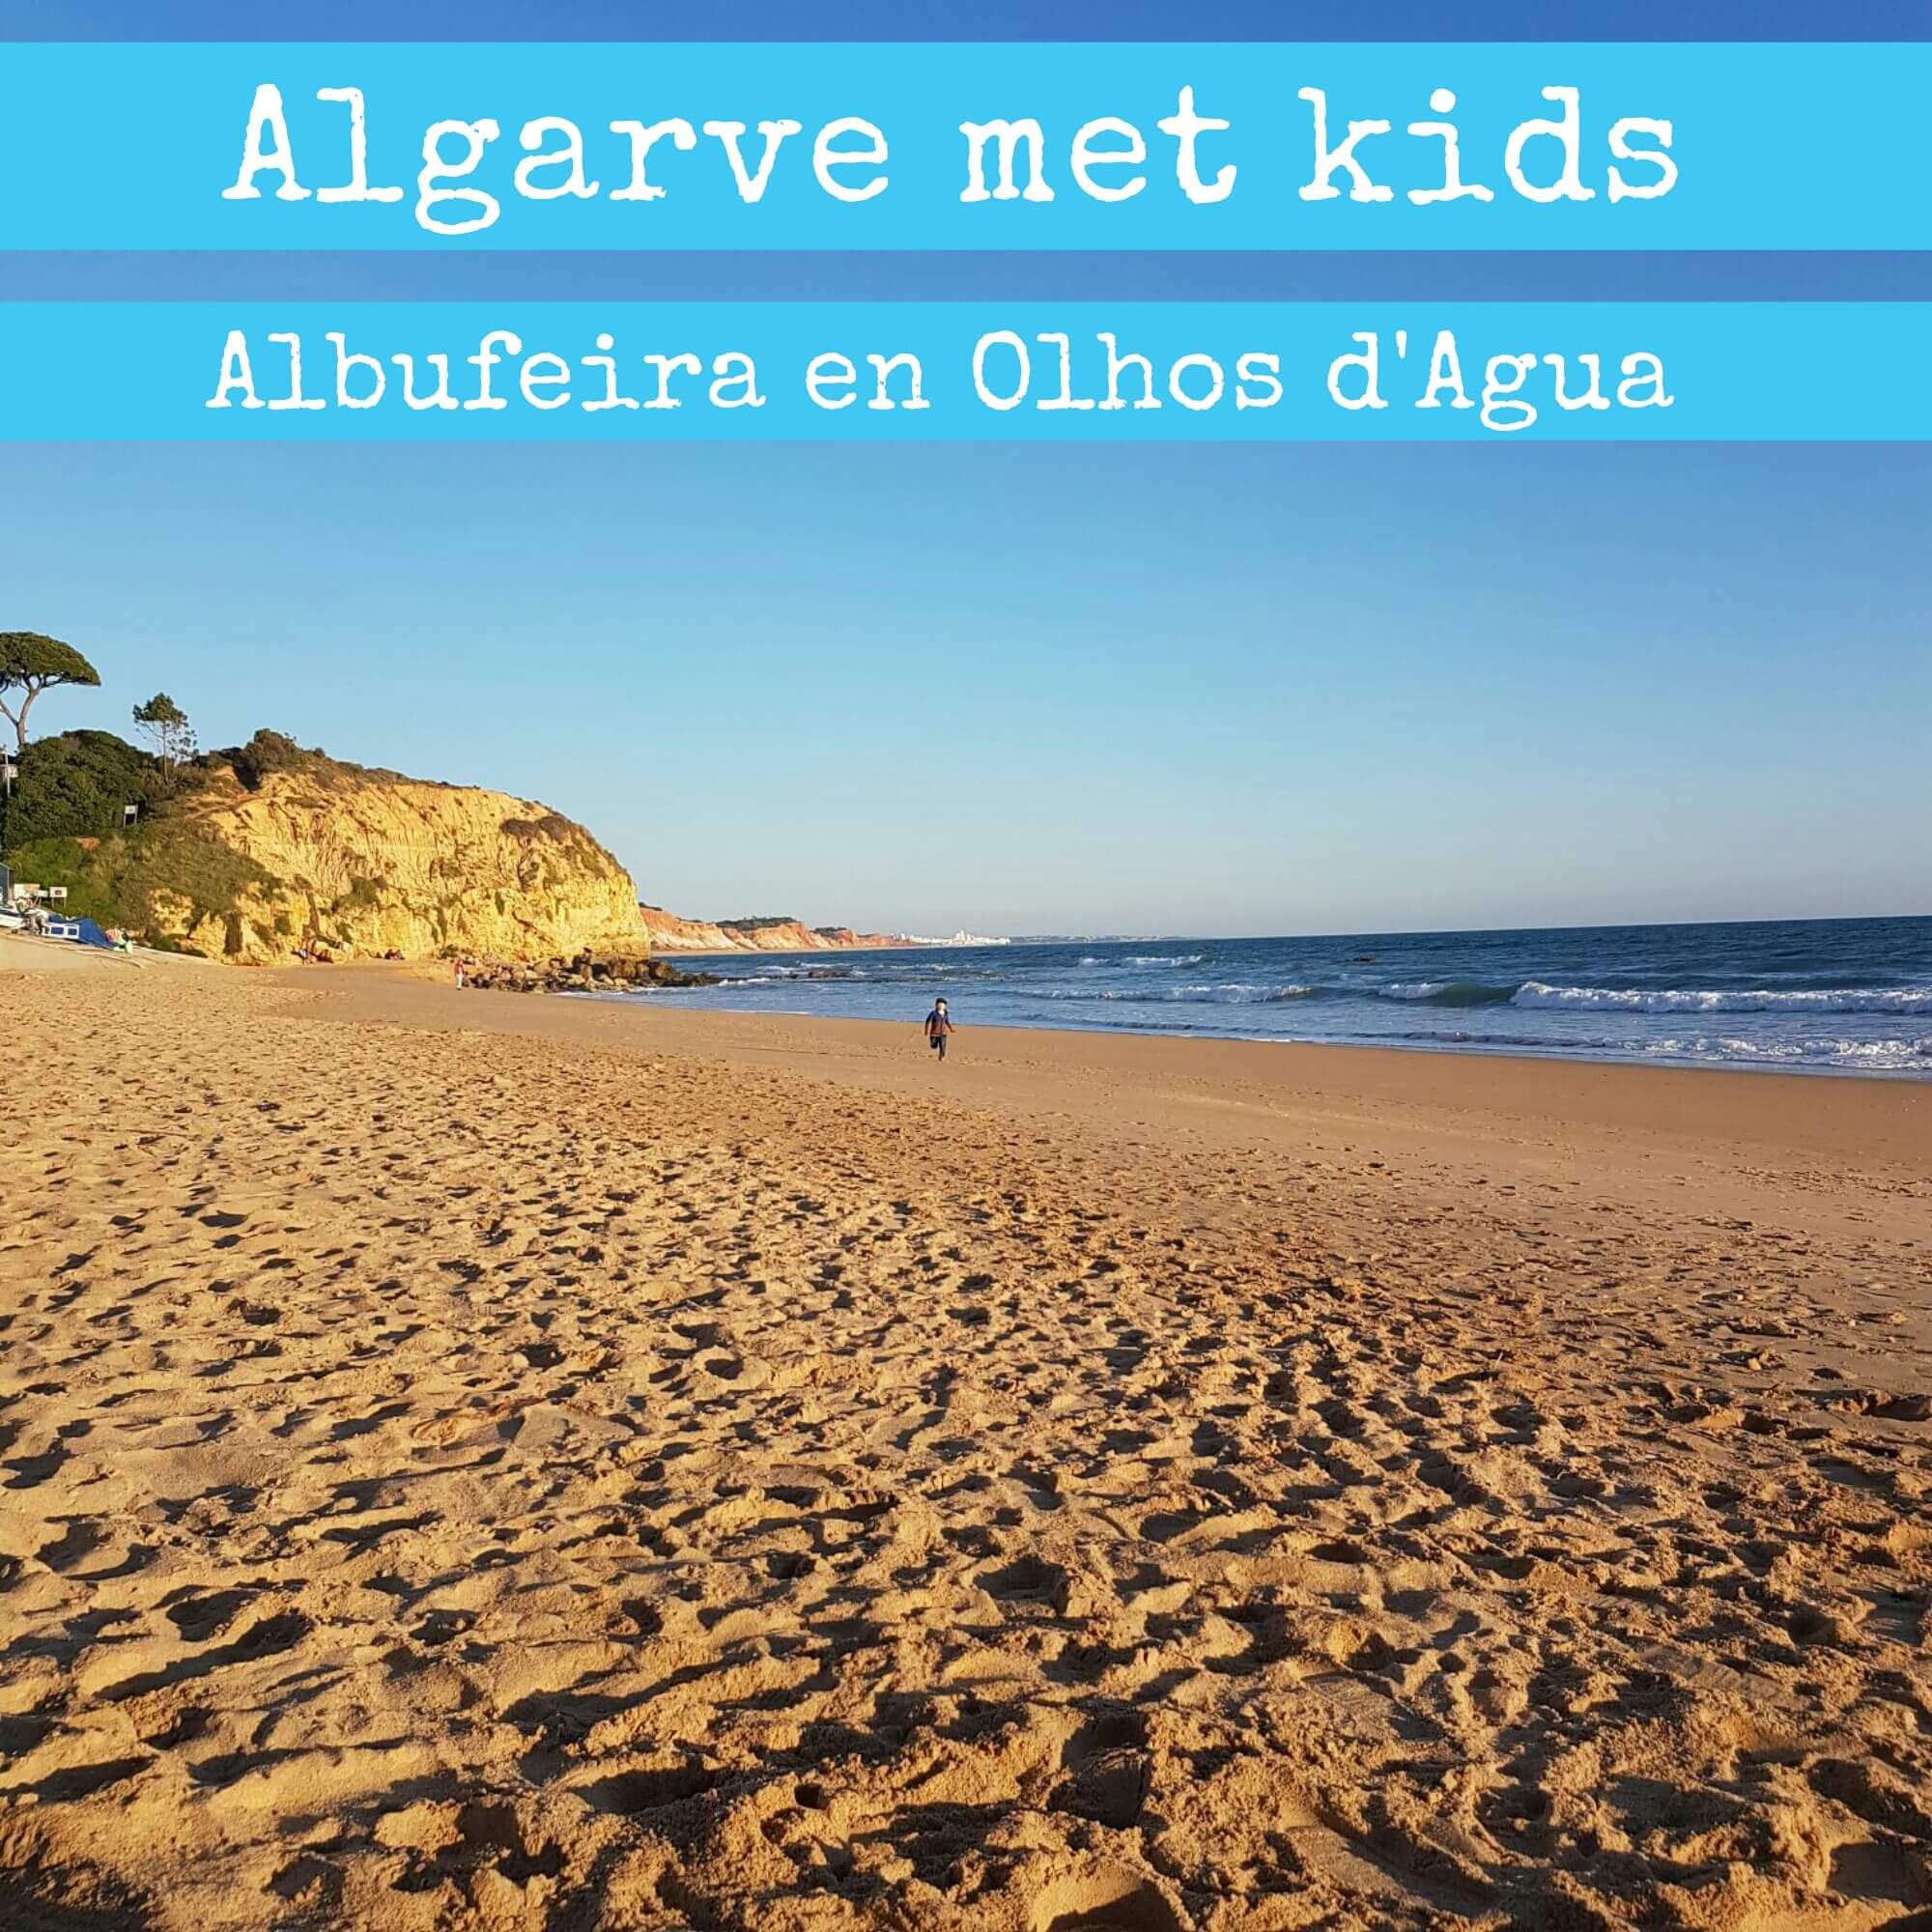 Algarve met kids: Albufeira en Olhos d'Agua